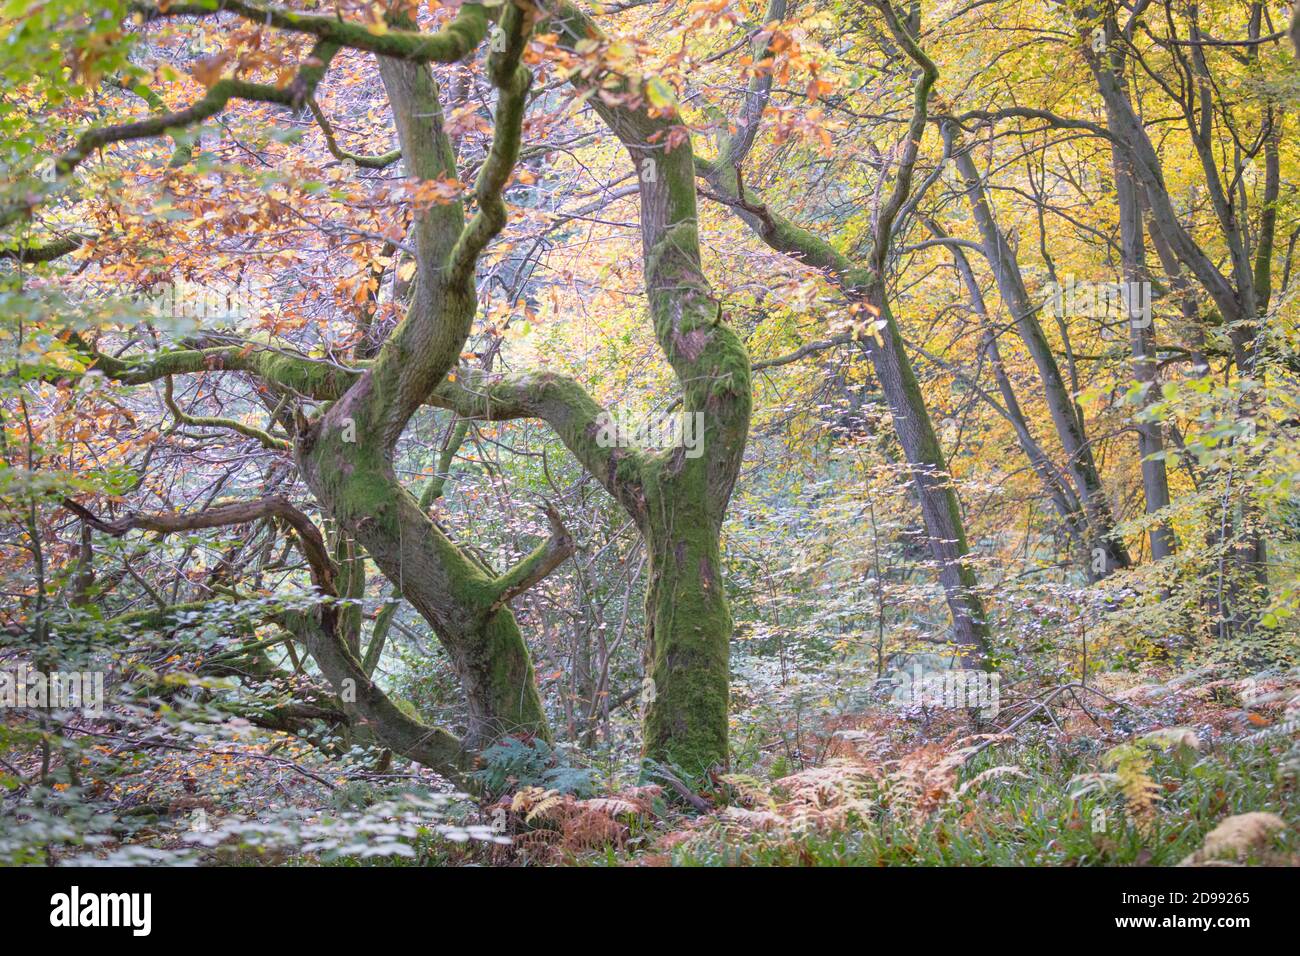 Retorcidos robles antiguos en un bosque en otoño, con hojas doradas y musgo verde brillante en los troncos y ramas de los árboles. Foto de stock